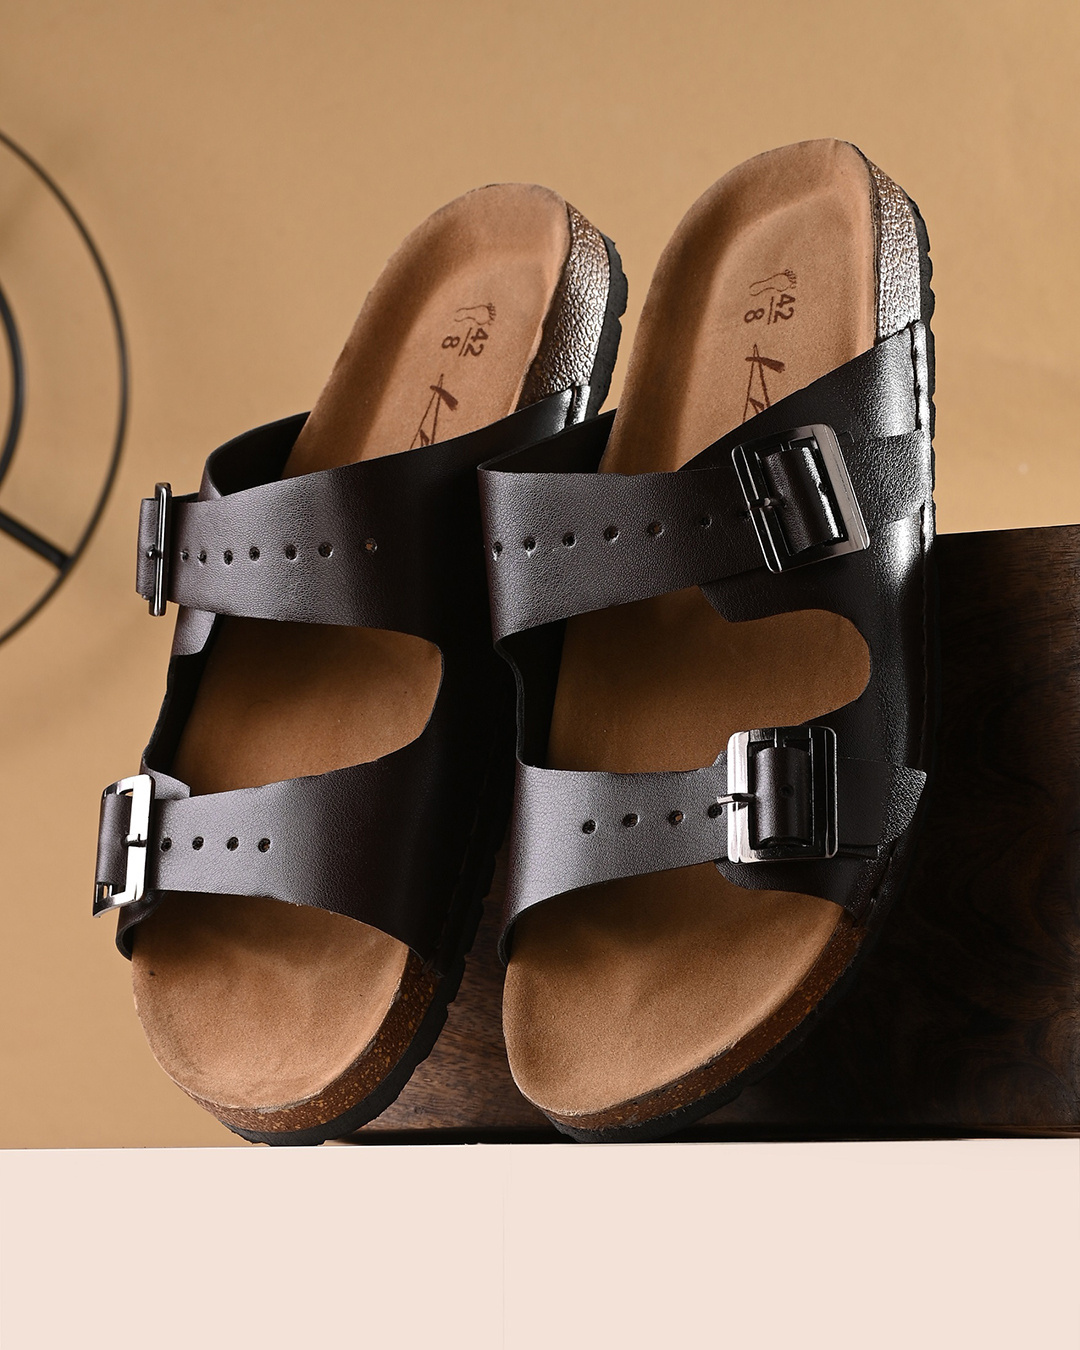 Buy Men's Brown Sandals Online in India at Bewakoof